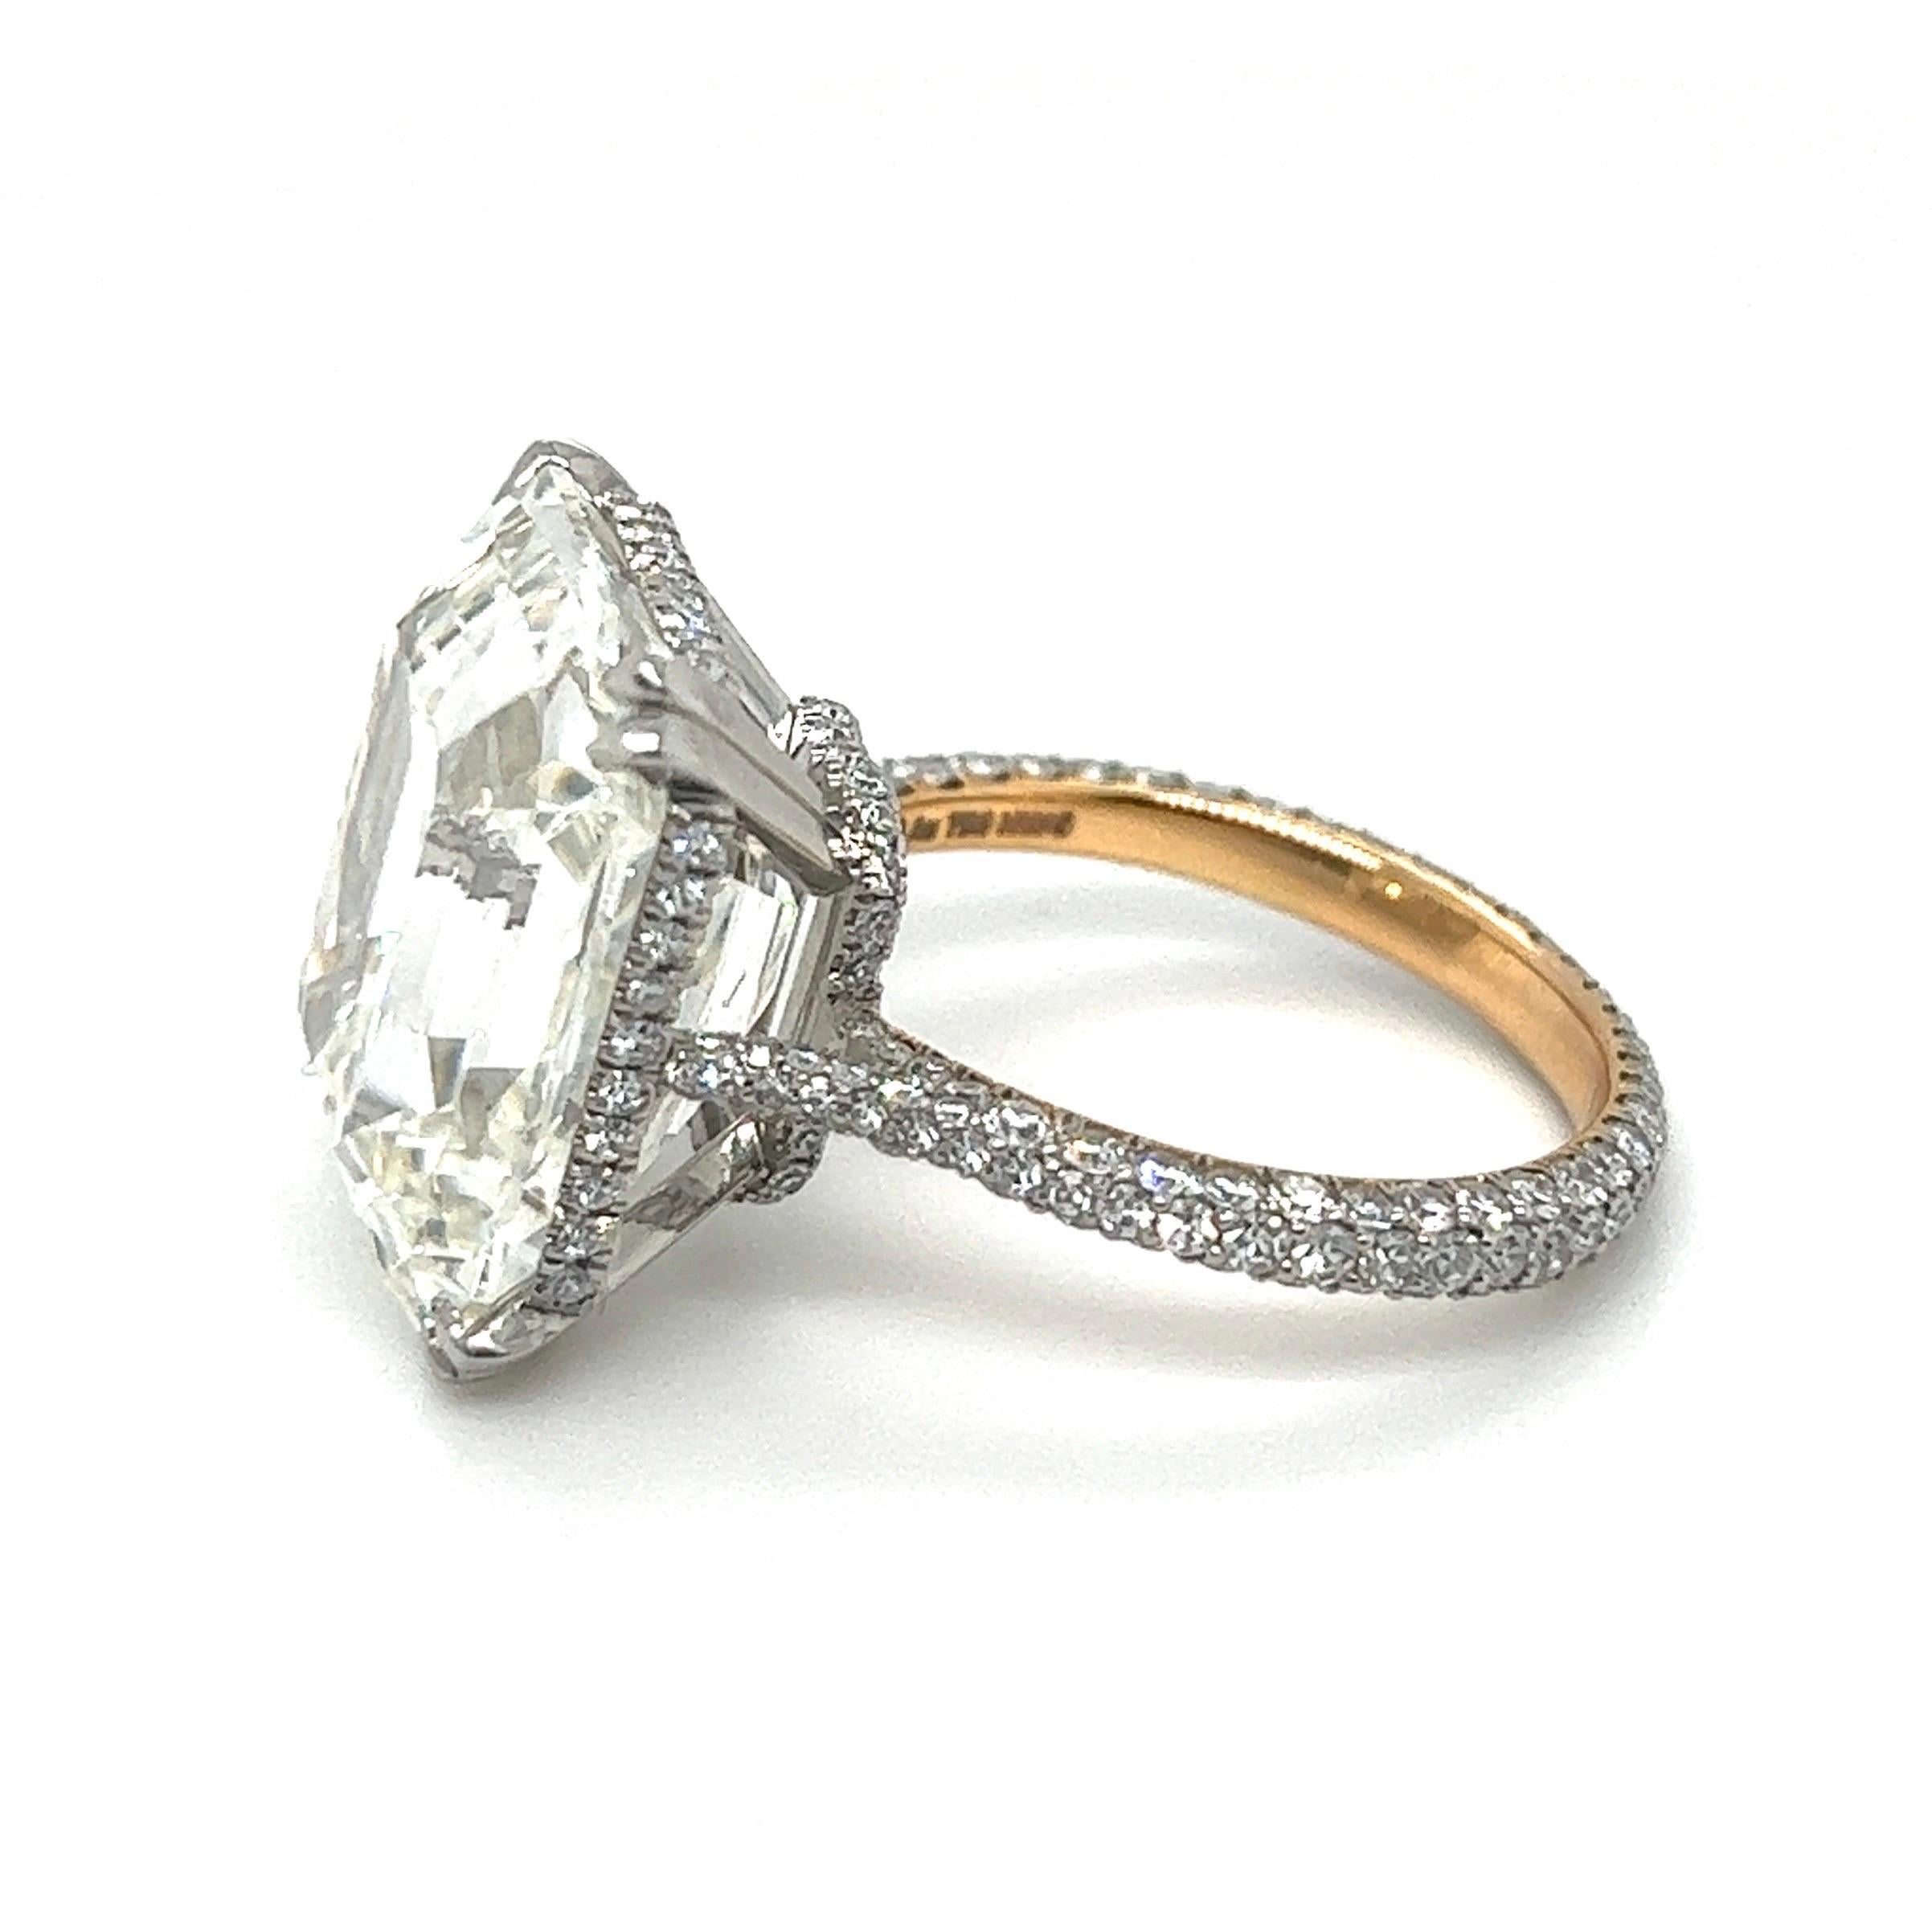 15 carat diamond ring cost